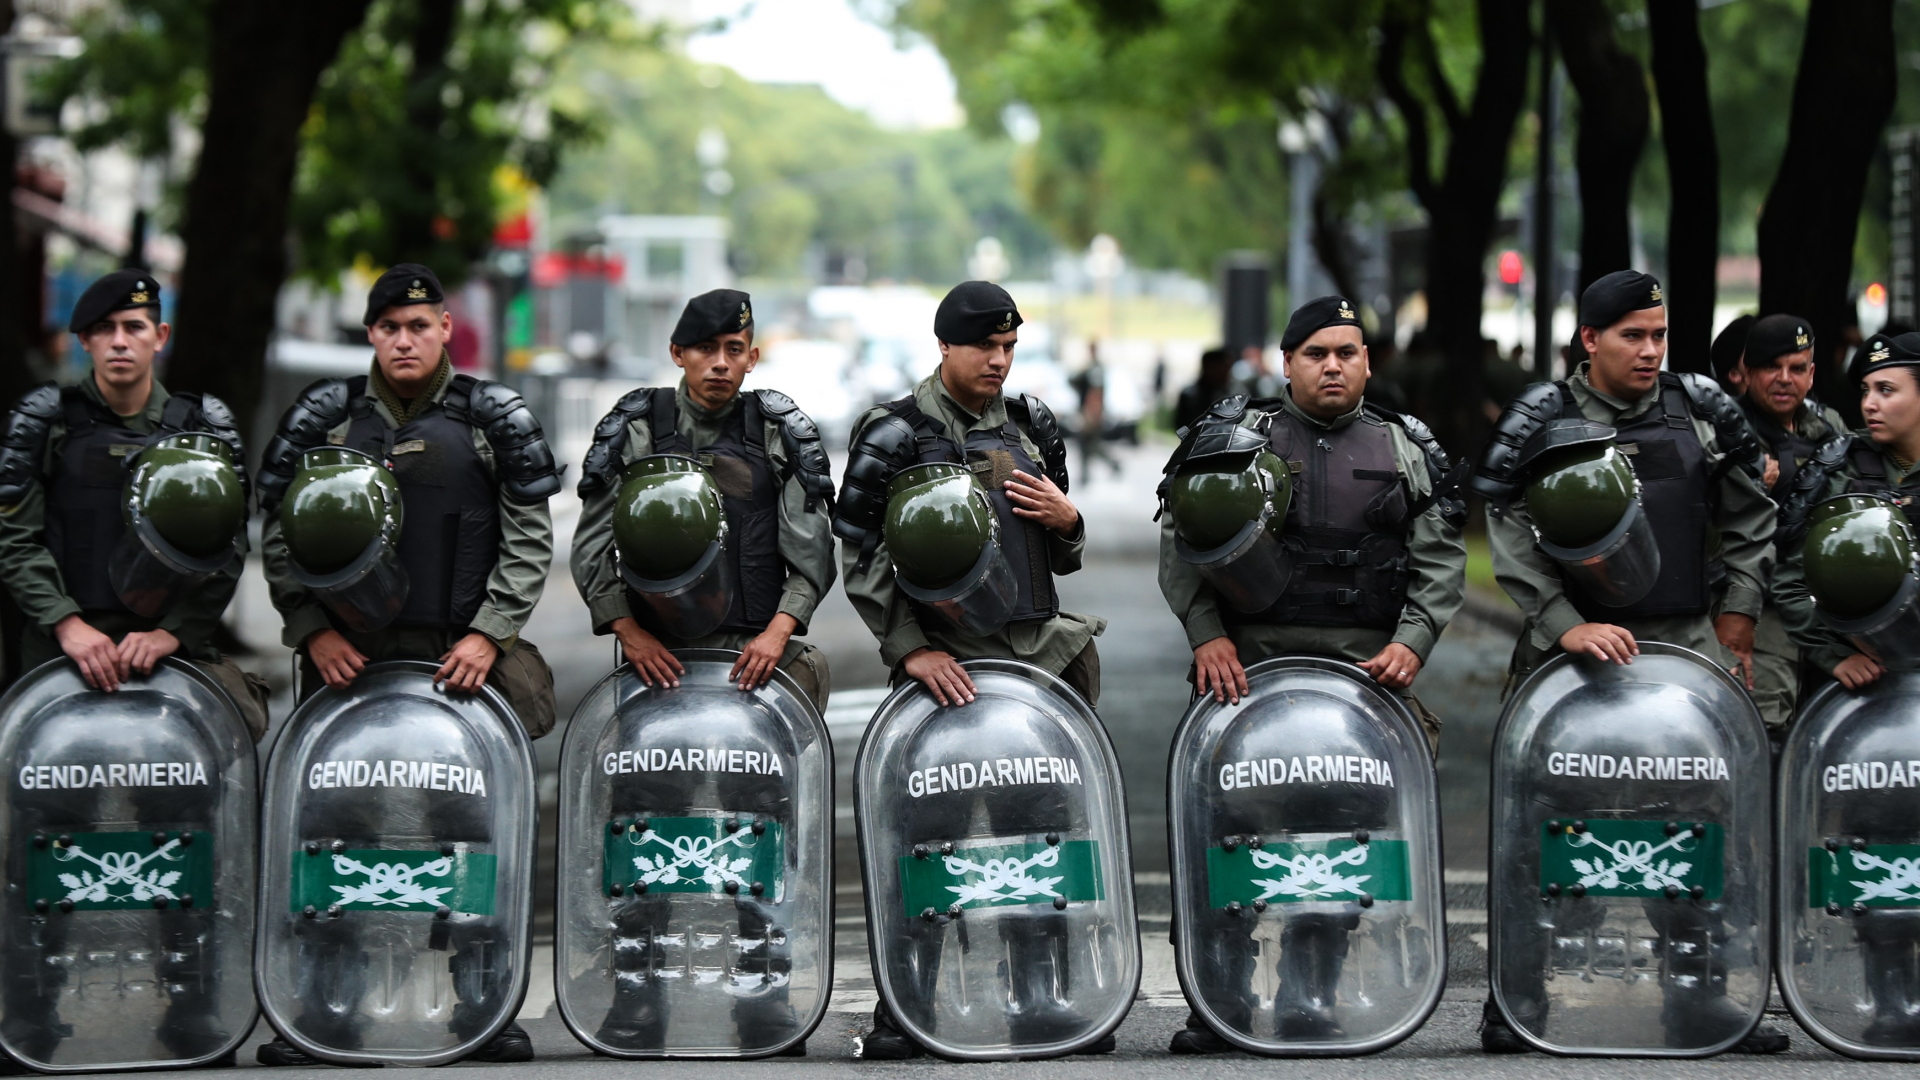 Sicherheitsvorkehrungen zum G20-Gipfel in Buenos Aires | Bildquelle: Alberto Valdes/EPA-EFE/REX/Shutt